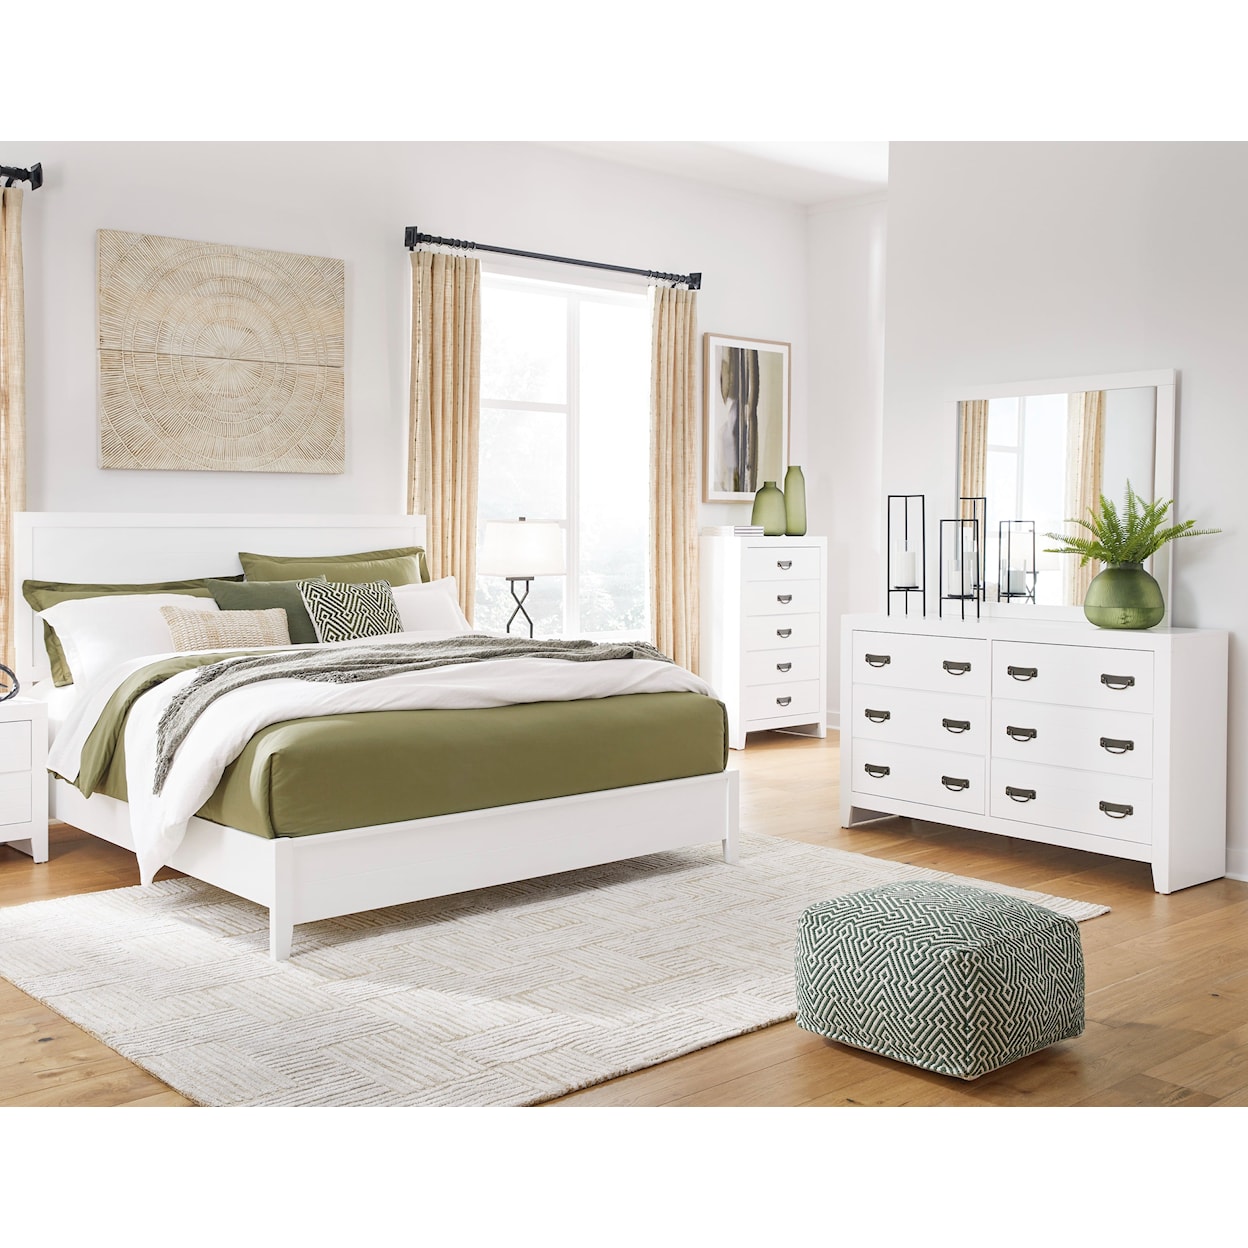 Signature Design by Ashley Furniture Binterglen King Bedroom Set